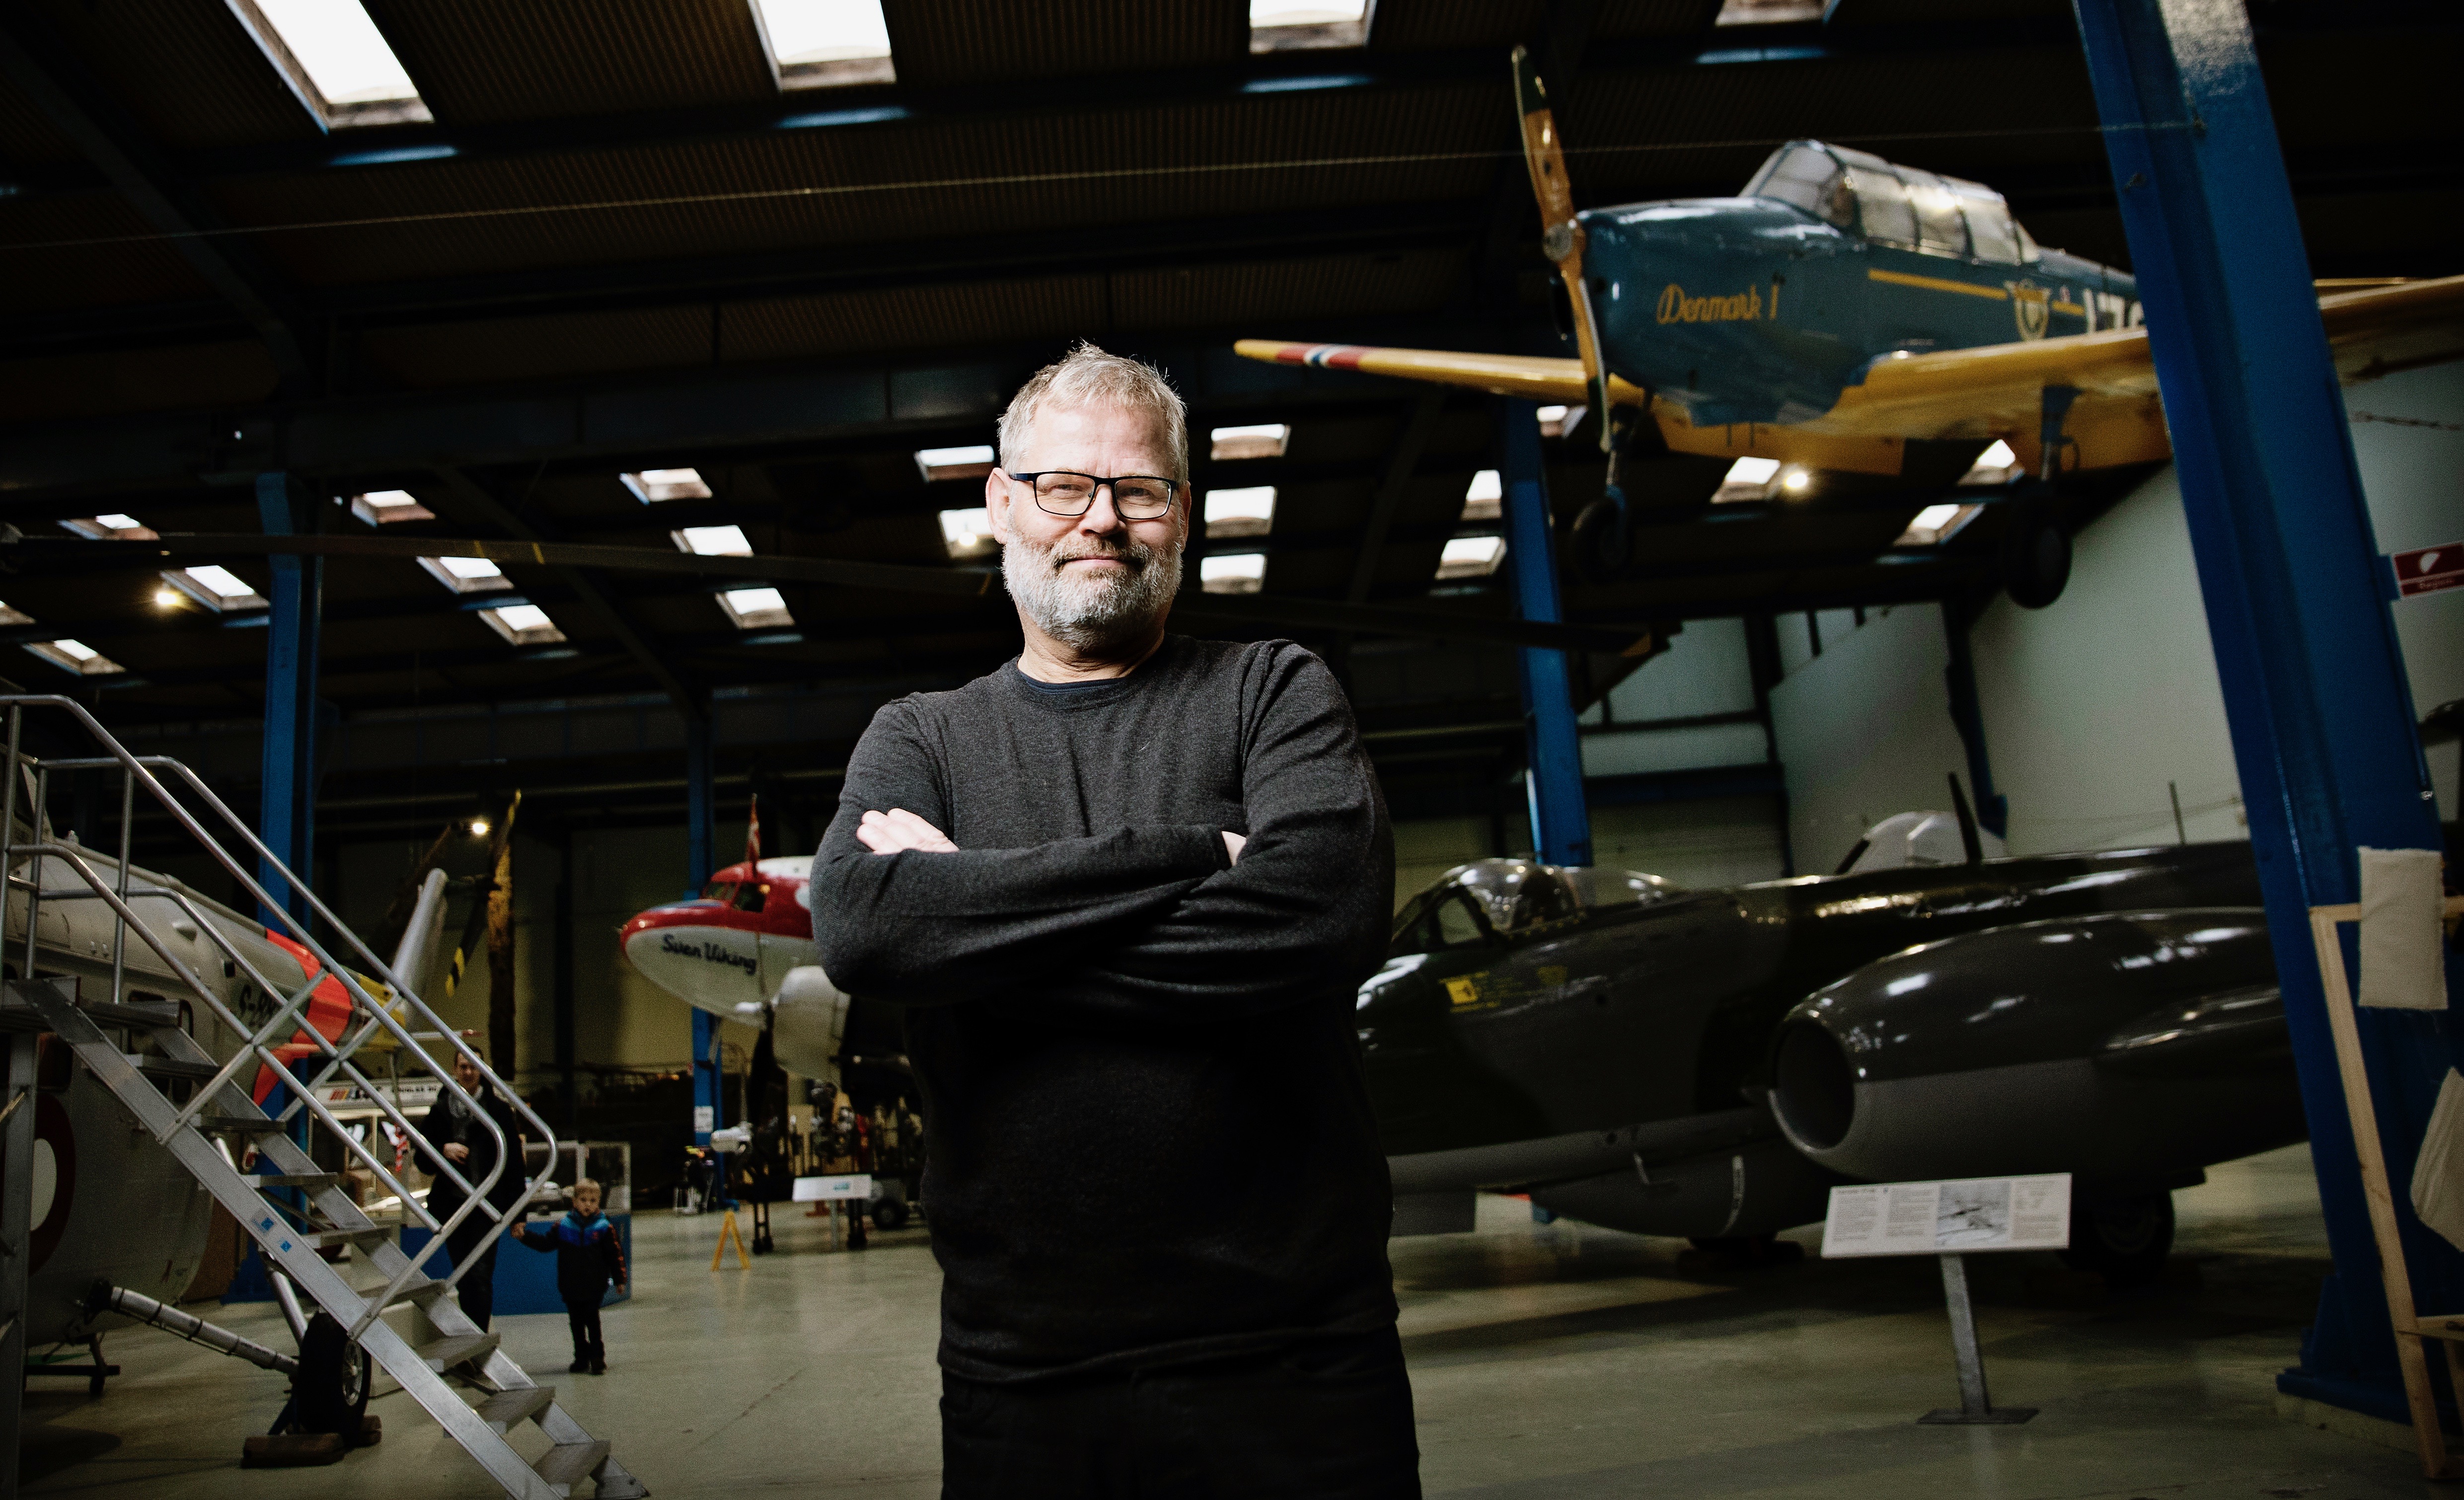 Torkild Adsersen, museuminspektør på Danmarks Tekniske Museum, fotograferet på museet omgivet af flyvemaskiner.